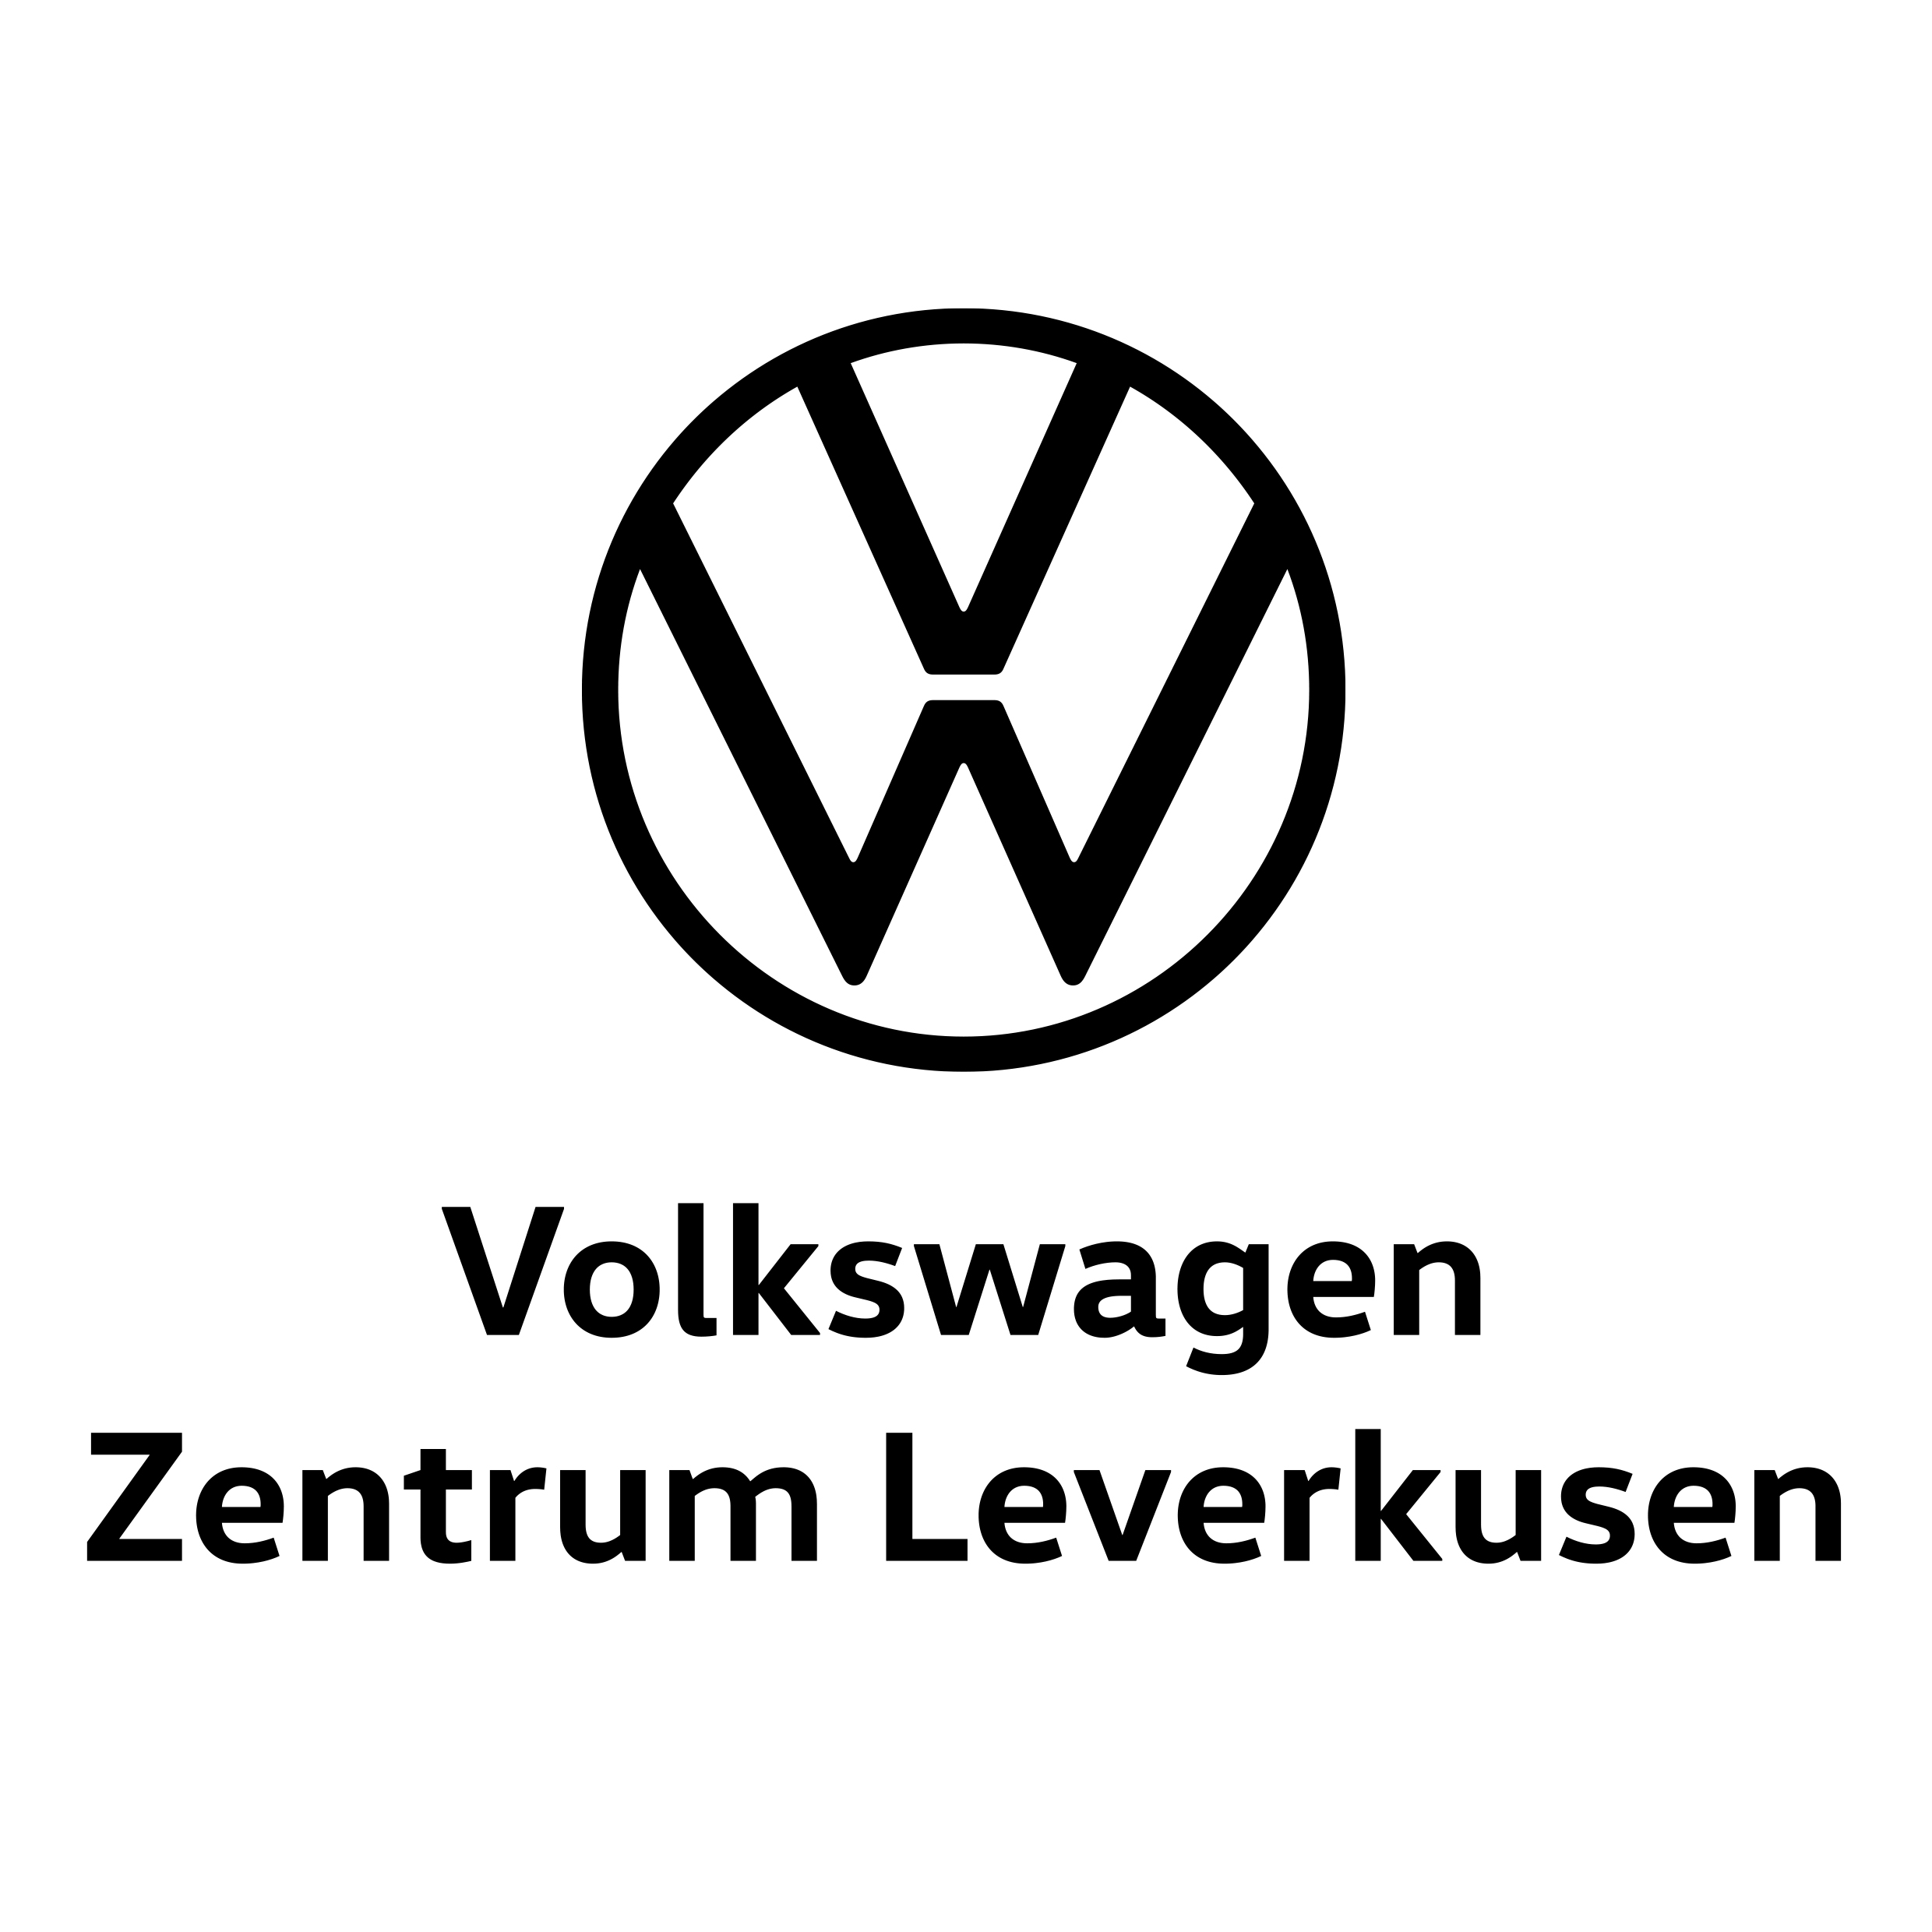 Volkswagen Nutzfahrzeug-Zentrum Leverkusen - Automobil Zentrum Leverkusen GmbH & Co. KG